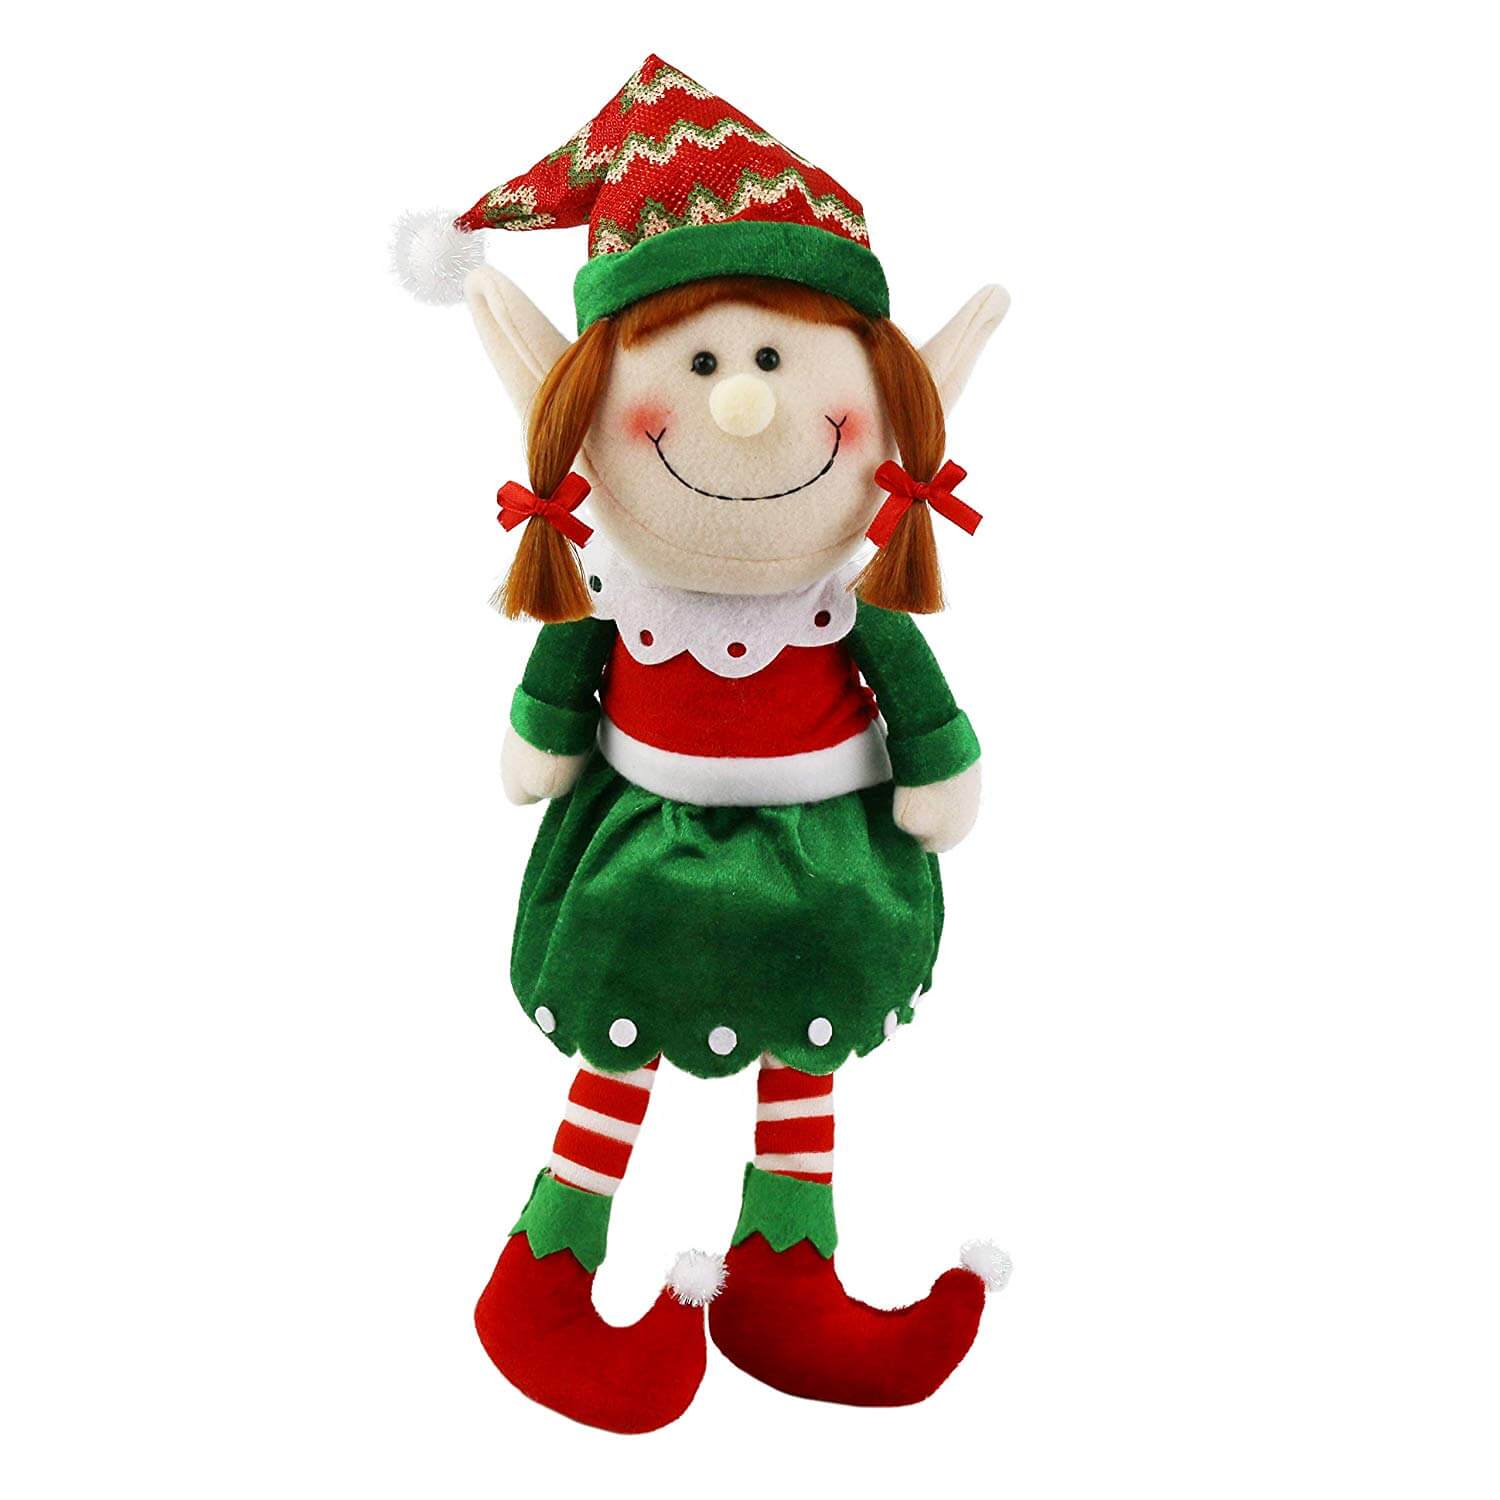 16’’ stuffed elf dolls Christmas decorations, boy/girl | Bstaofy - Glow Guards